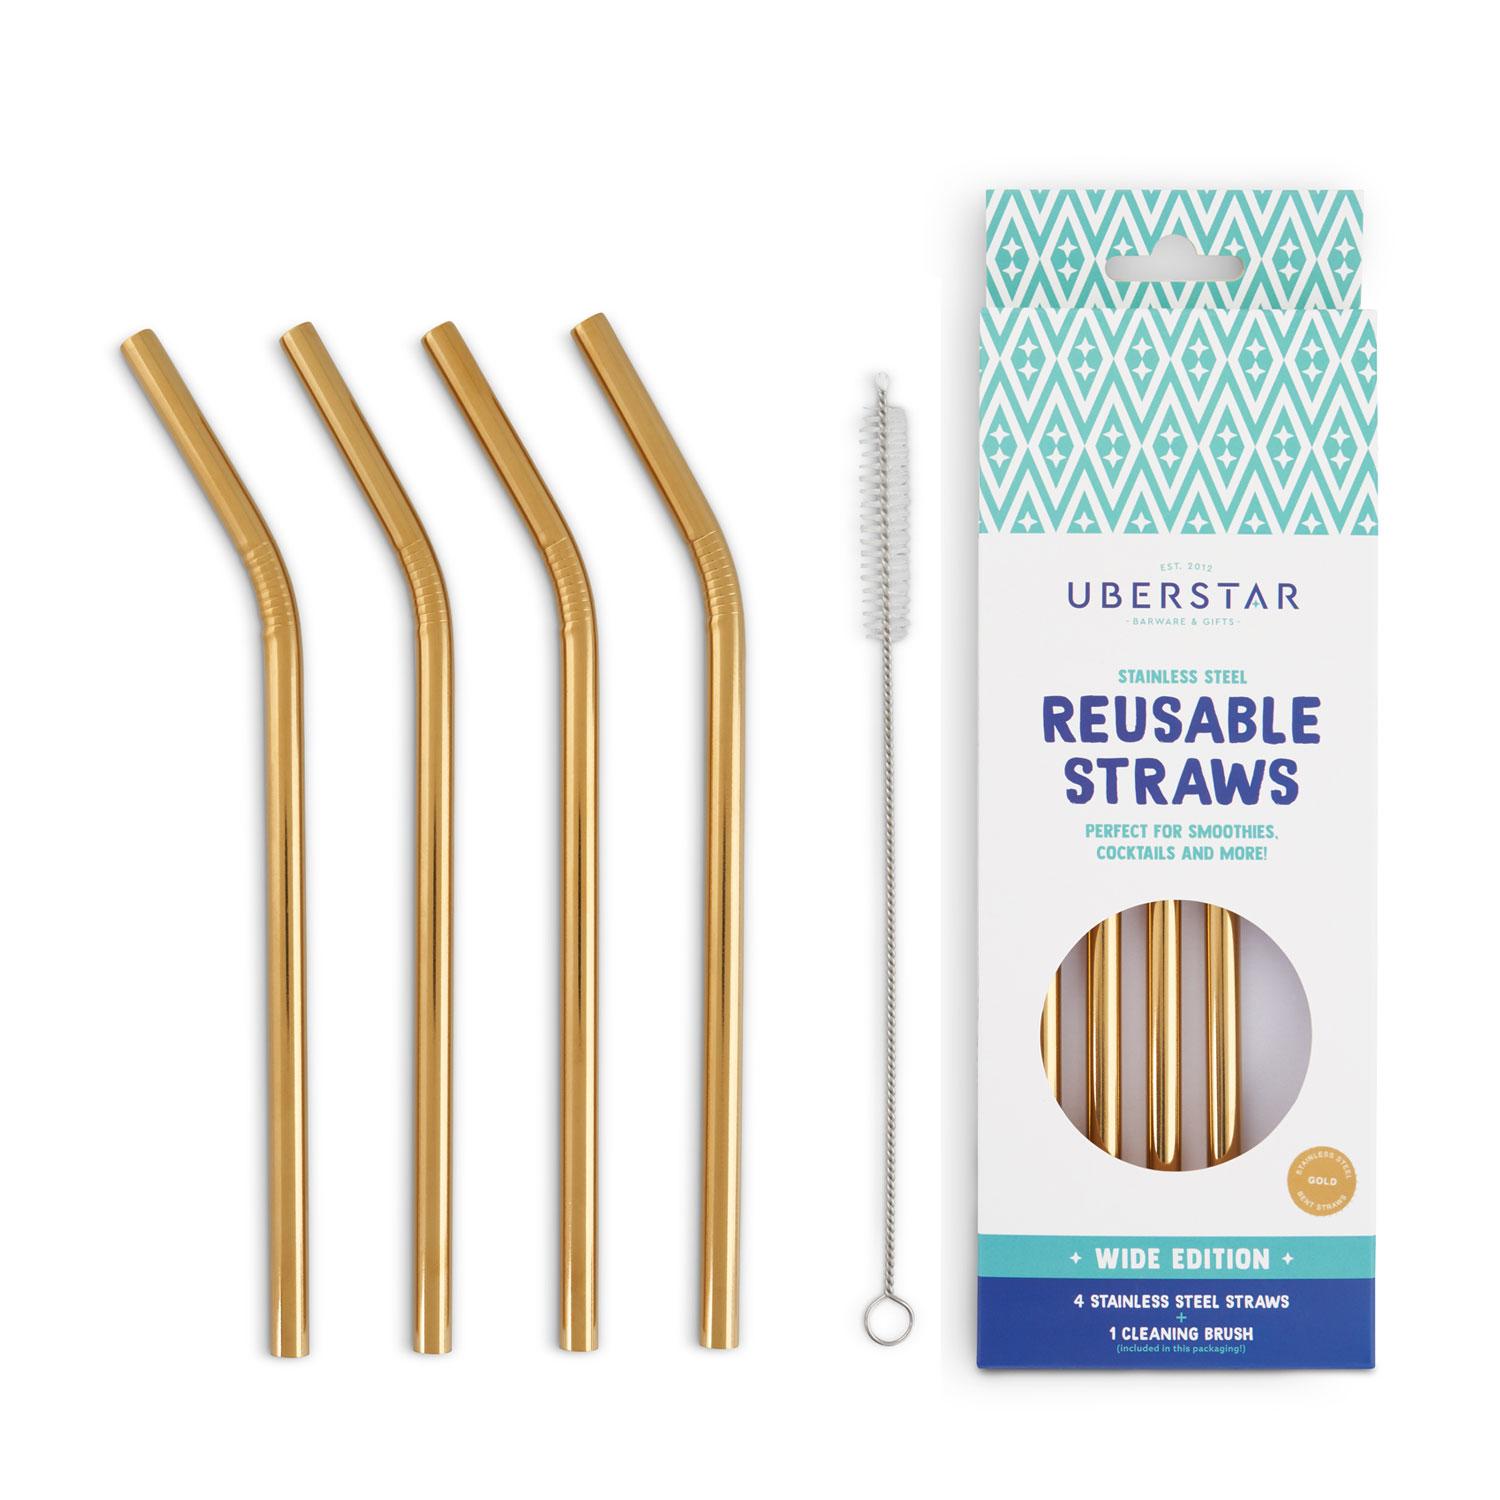 Uberstar Reusable Straws (4 Pack) - Gold